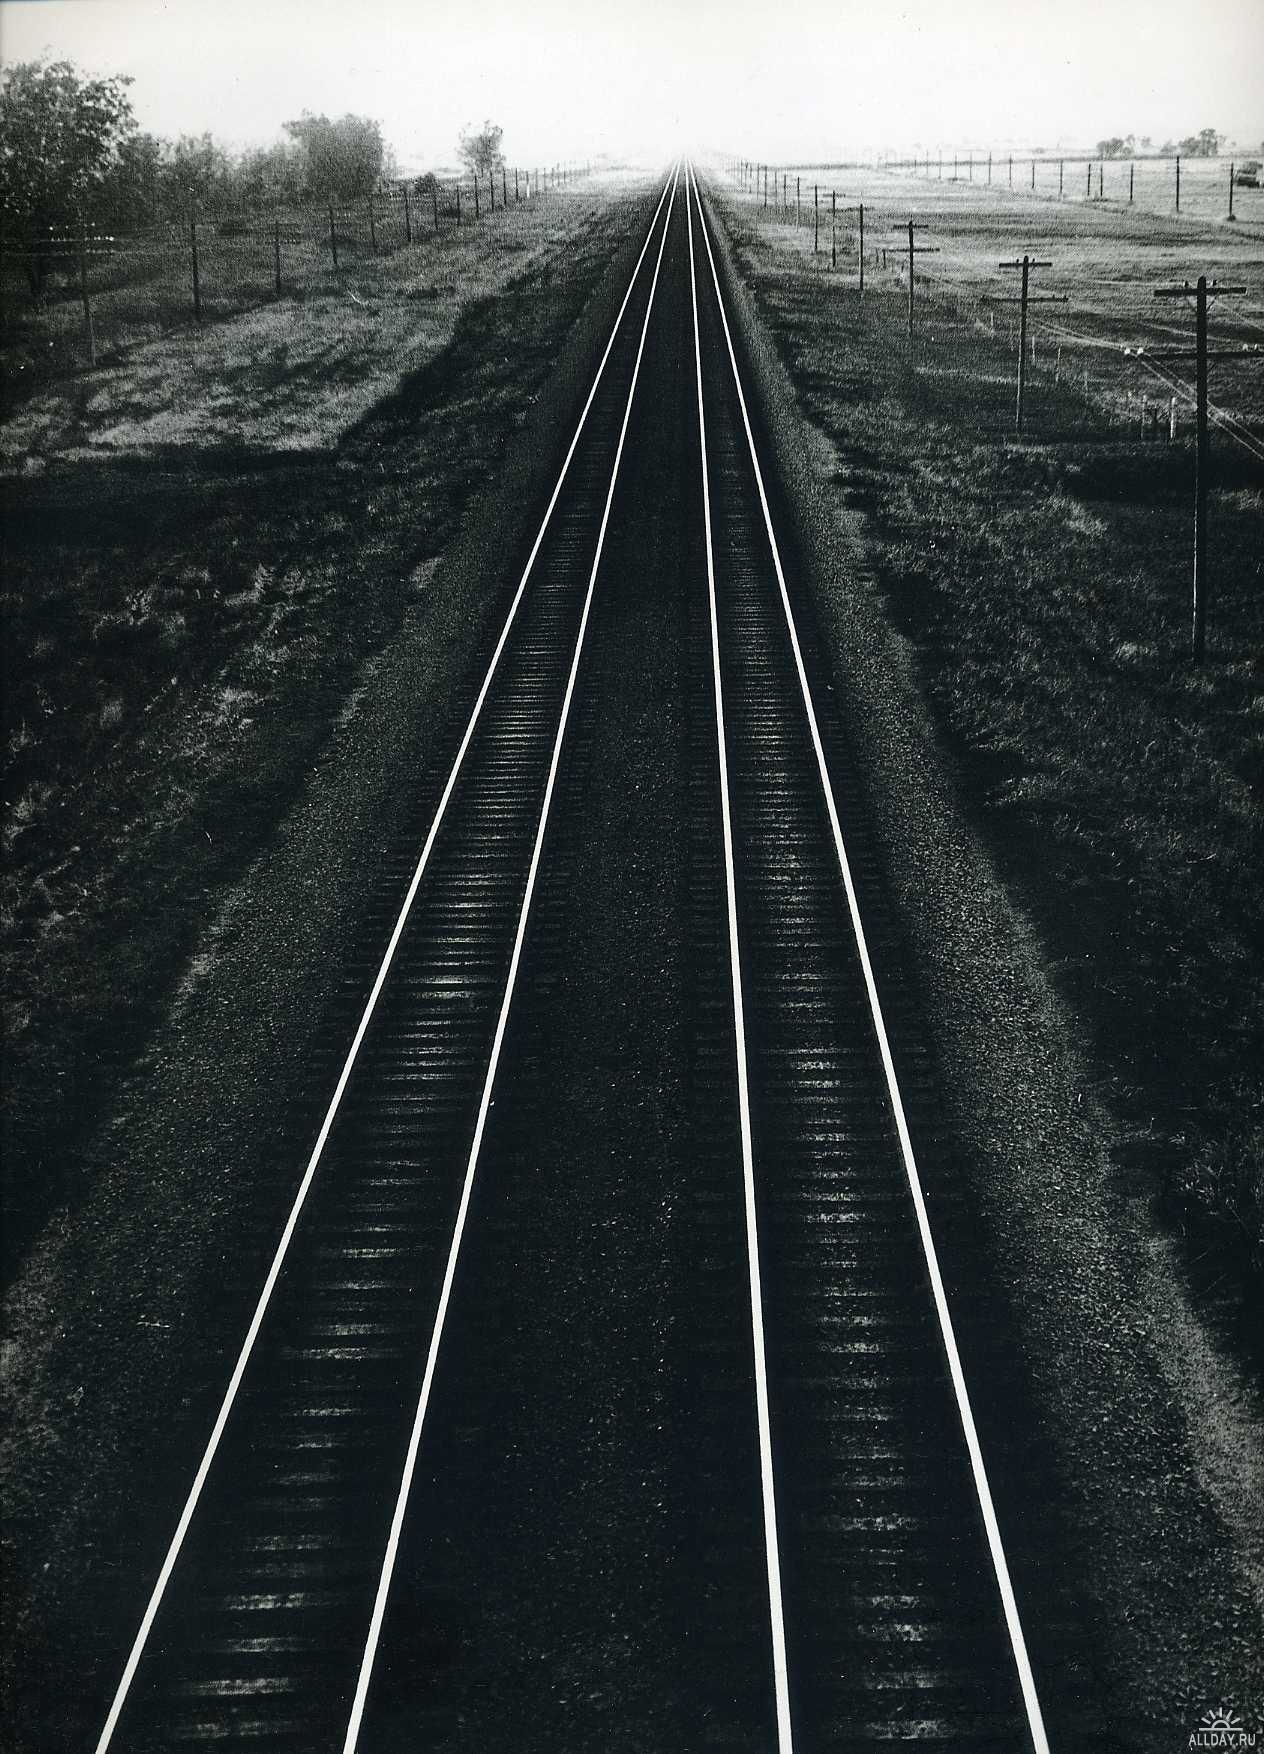 Андреас Фейнінґер (Andreas Feininger) один з кращих фотографів ХХ століття